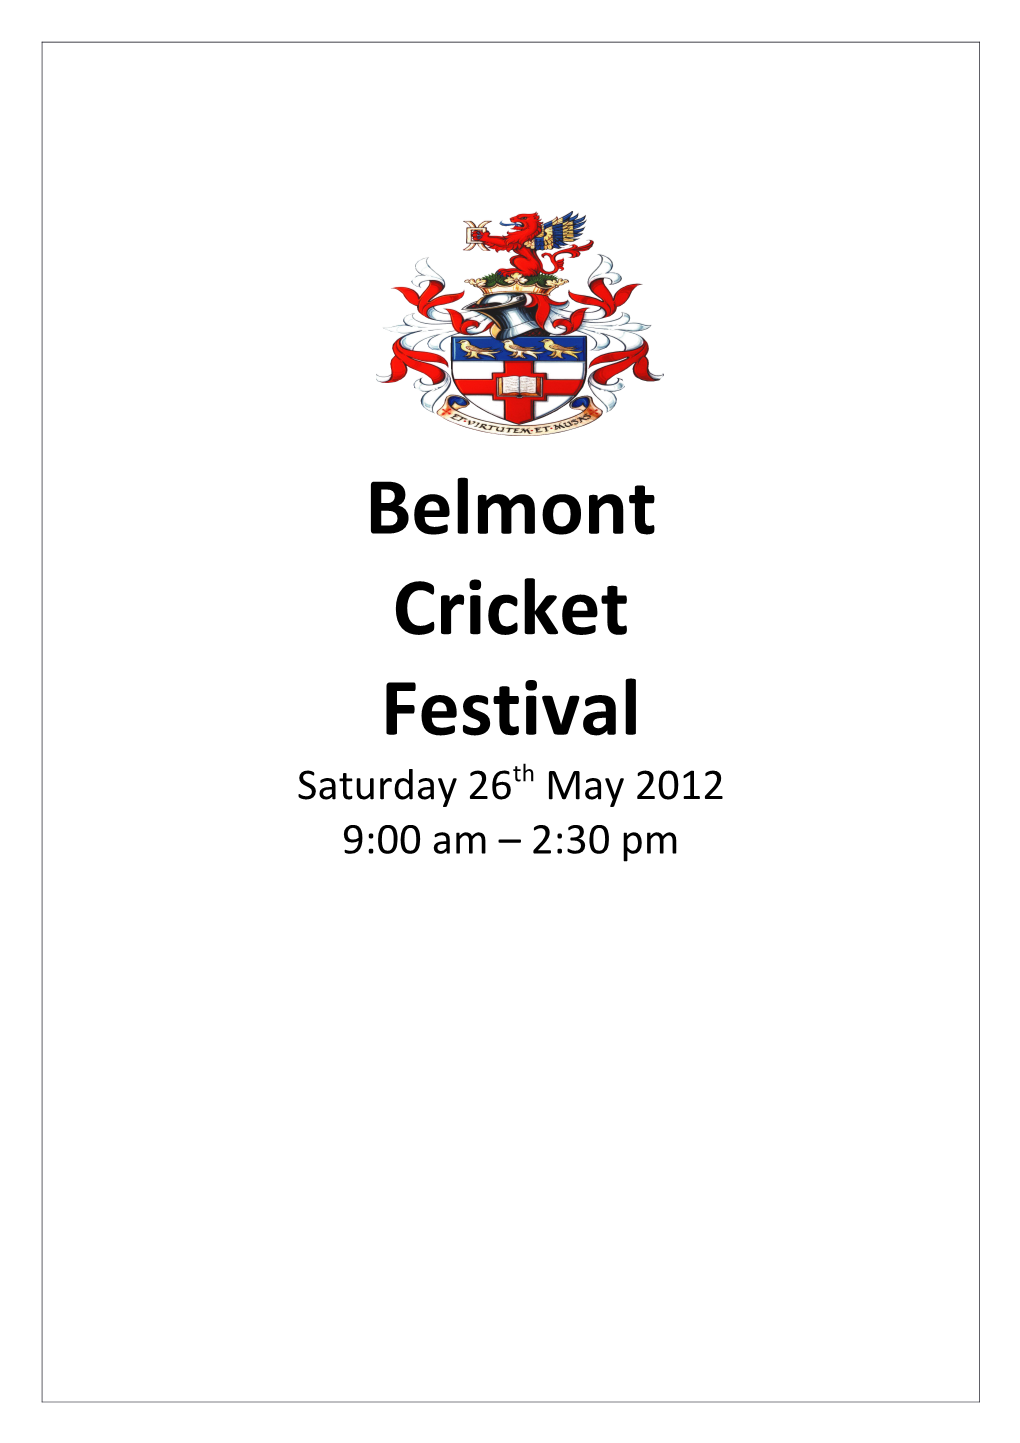 Belmont Cricket 8 a Side Cricket Festival